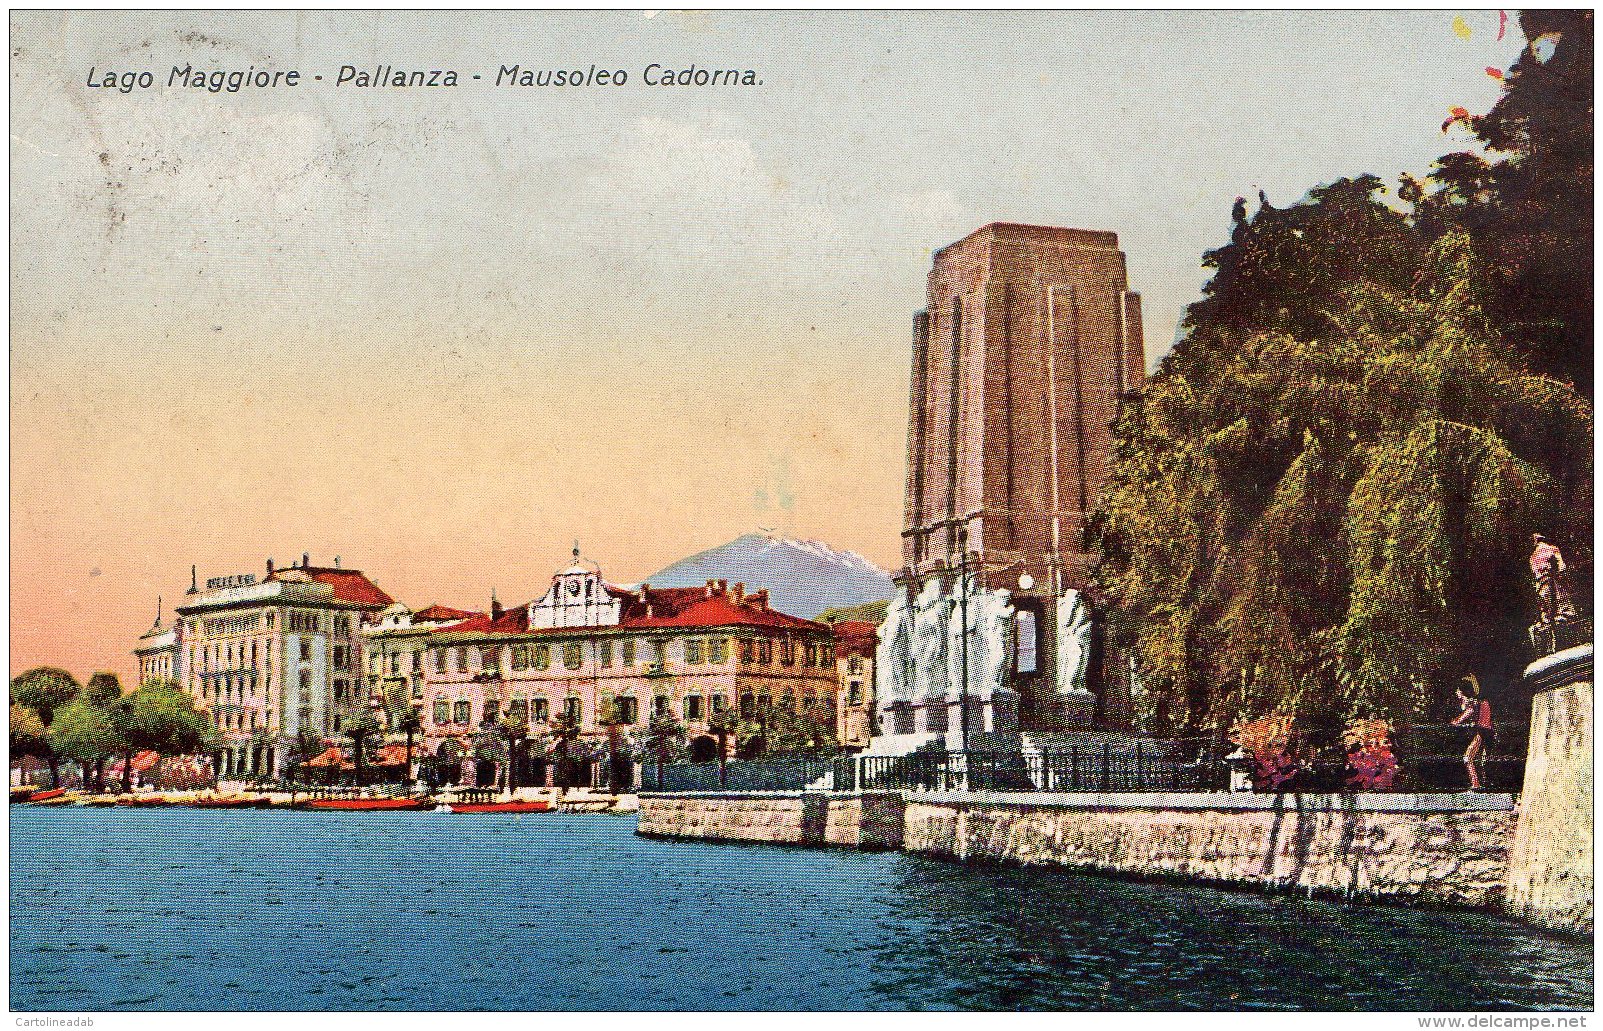 [DC9674] CPA - LAGO MAGGIORE - PALLANZA - MAUSOLEO CADORNA - Viaggiata - Old Postcard - Verbania